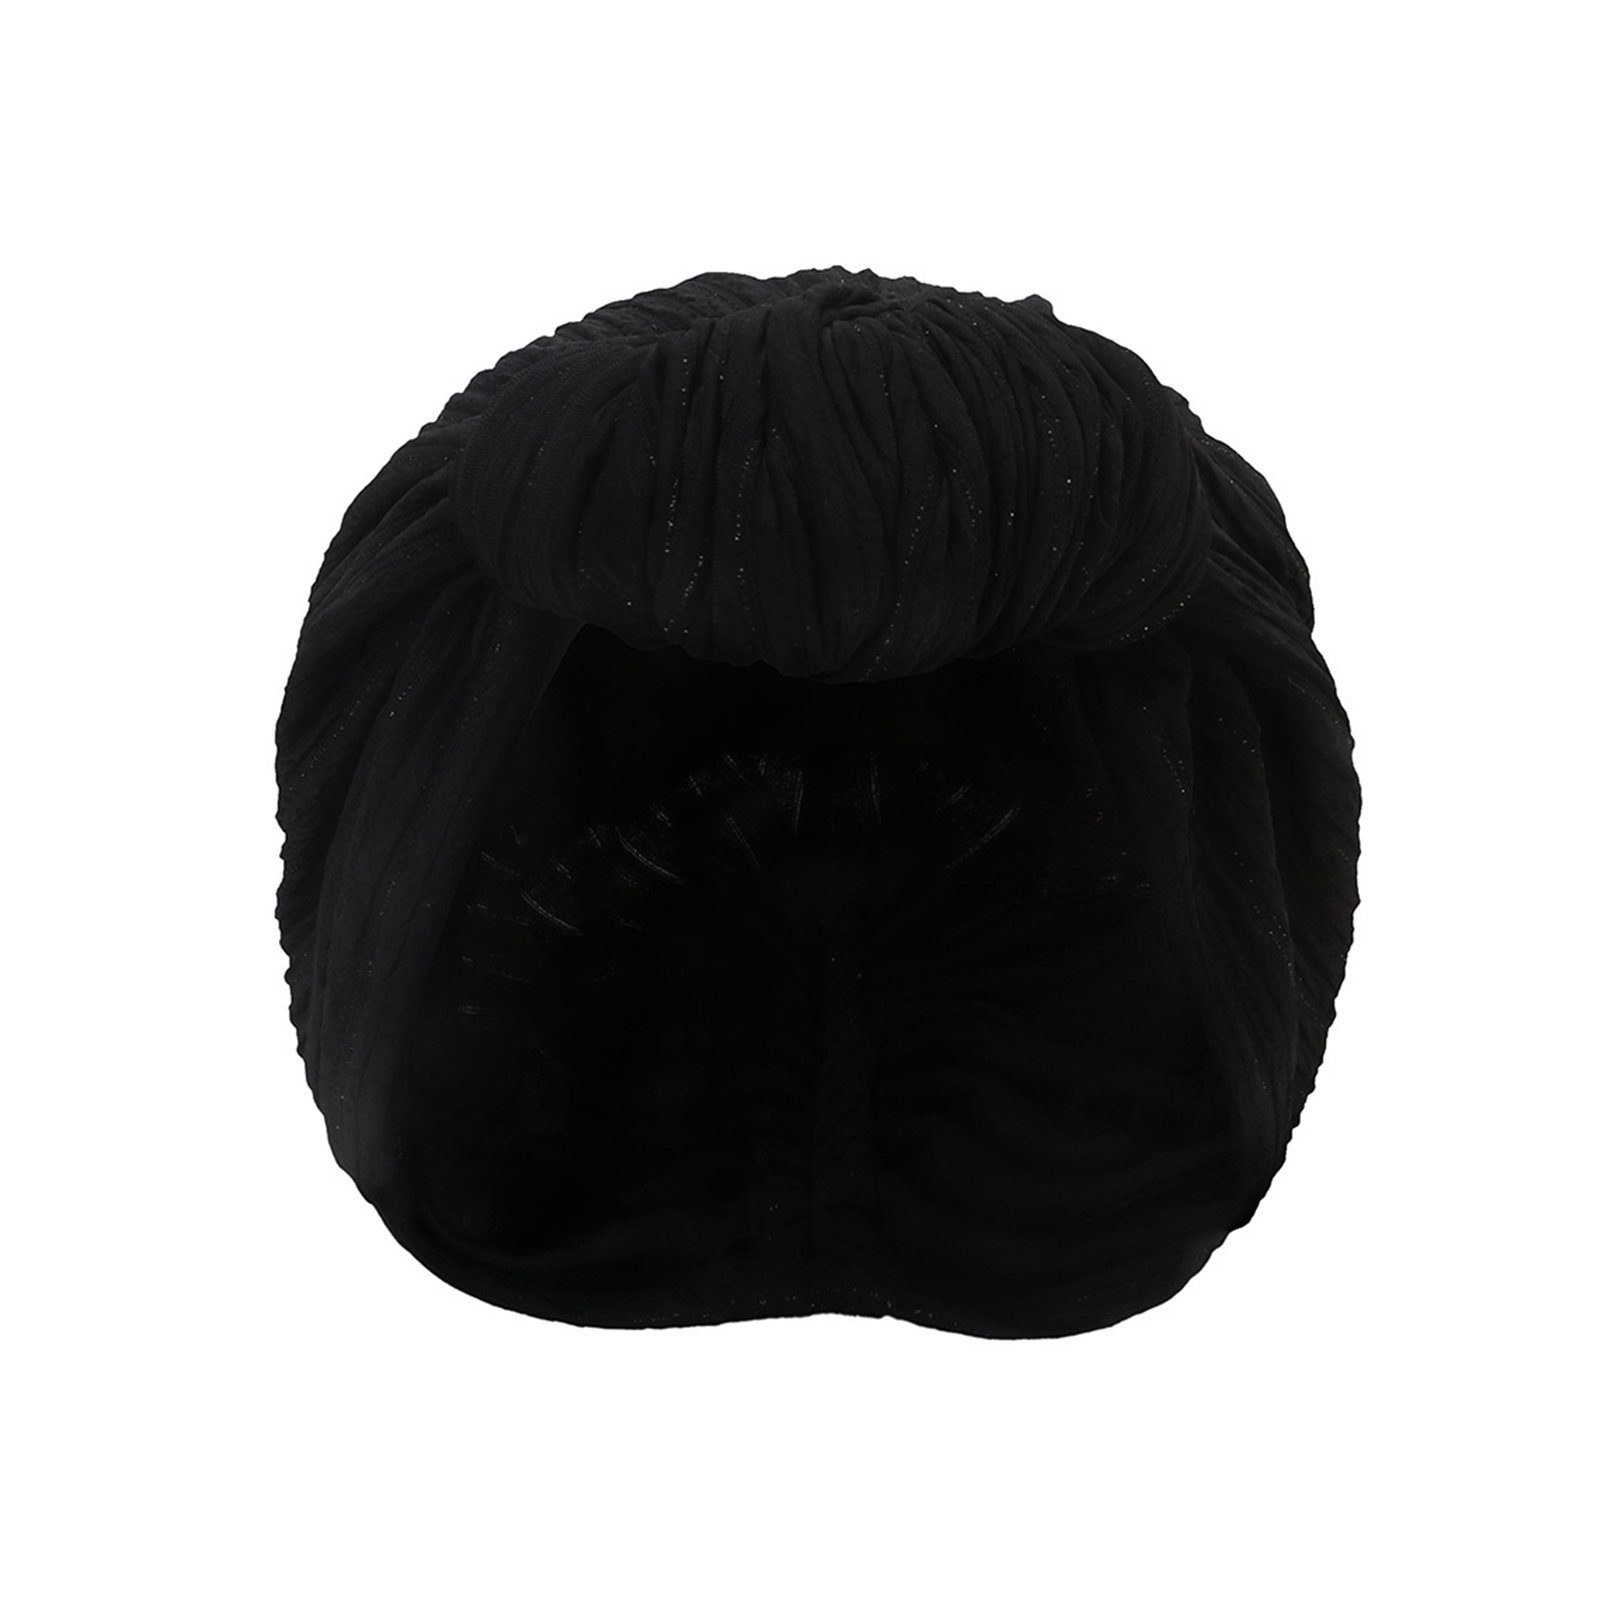 Blusmart Stirnband Modische Mütze Für Damen, Elastische Baumwolle, Knotenmütze, Stirnband Schwarz